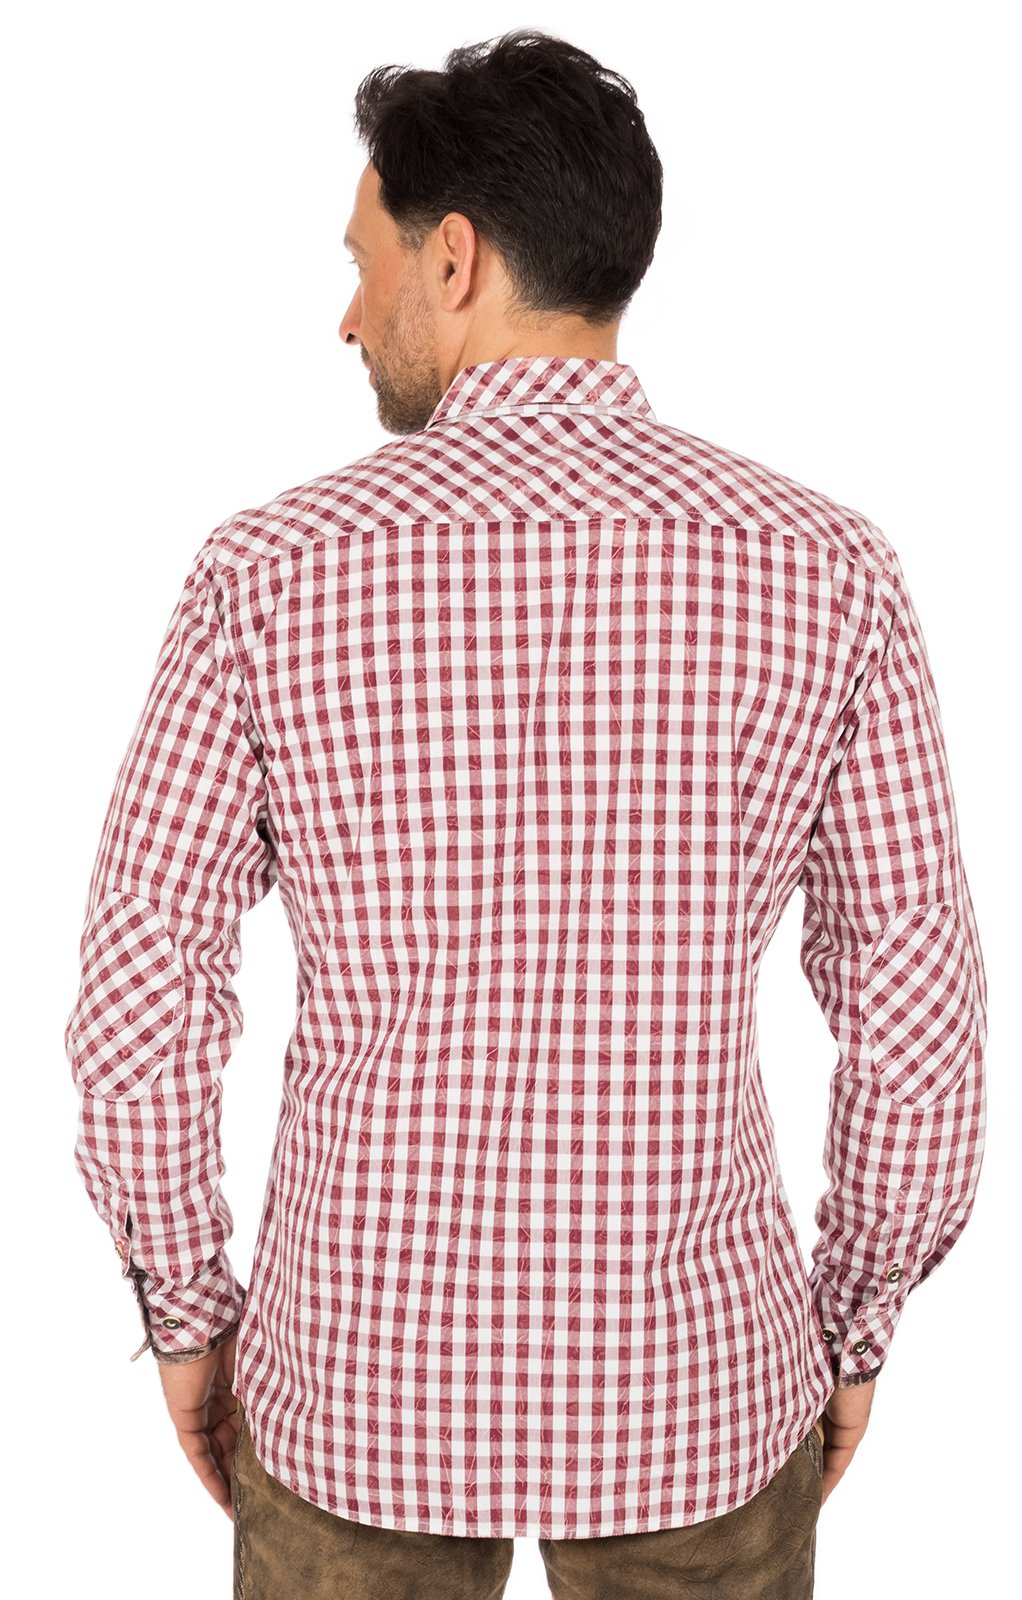 weitere Bilder von German traditional shirt white red